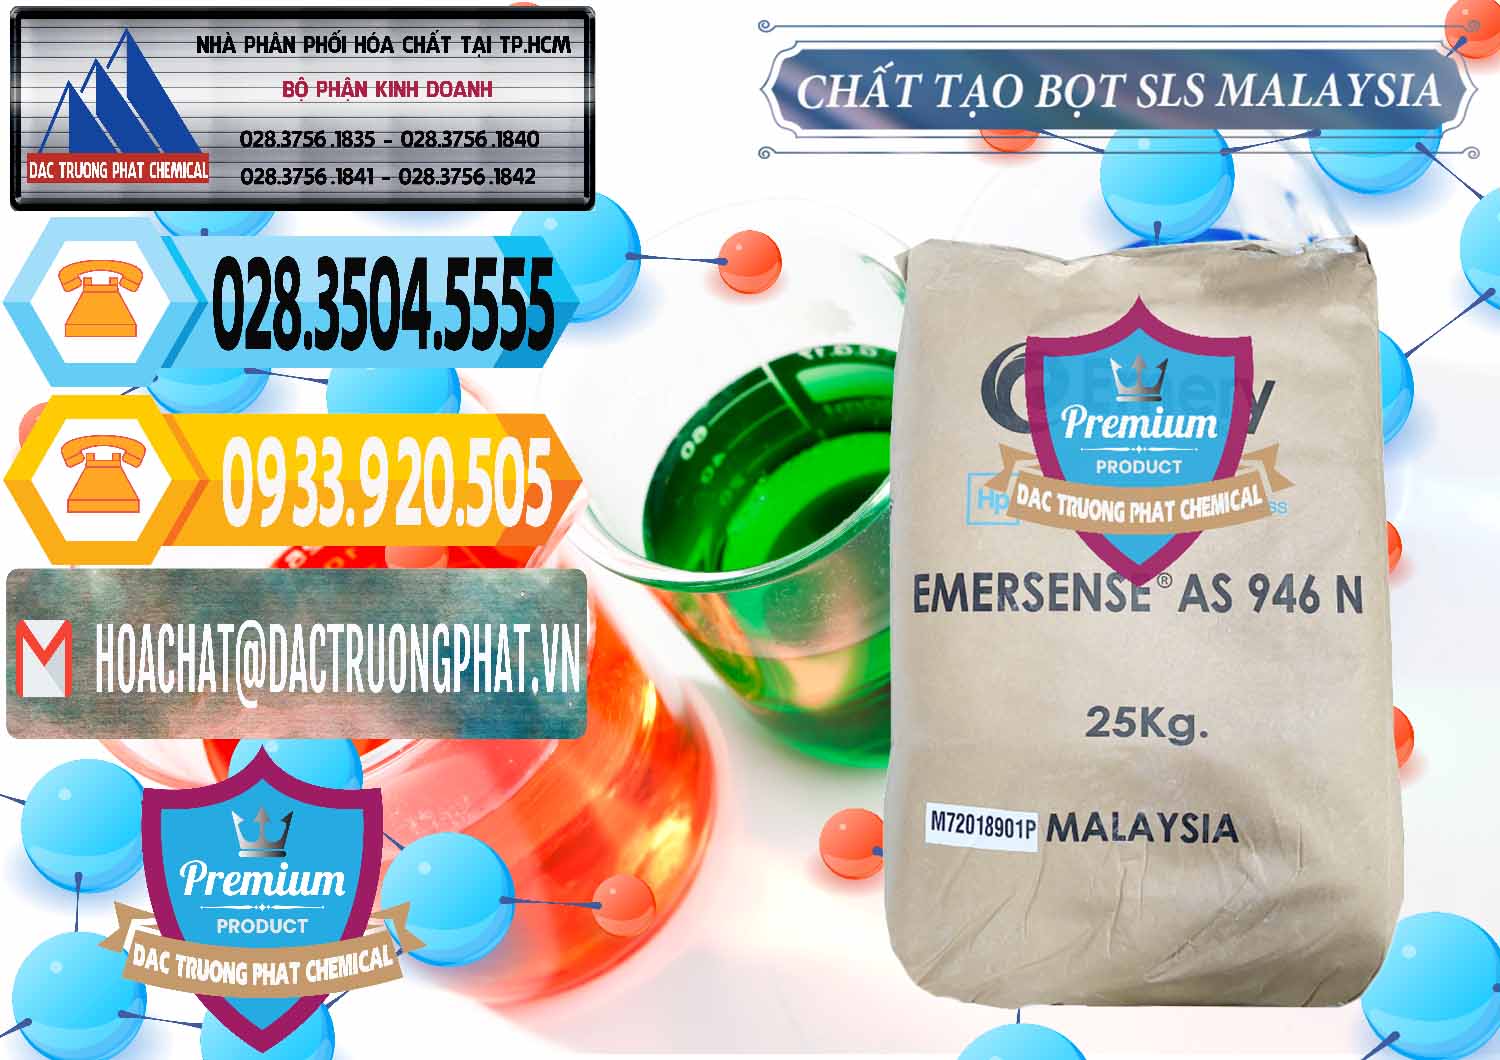 Nơi chuyên bán và phân phối Chất Tạo Bọt SLS Emery - Emersense AS 946N Mã Lai Malaysia - 0423 - Nơi chuyên cung ứng - phân phối hóa chất tại TP.HCM - hoachattayrua.net